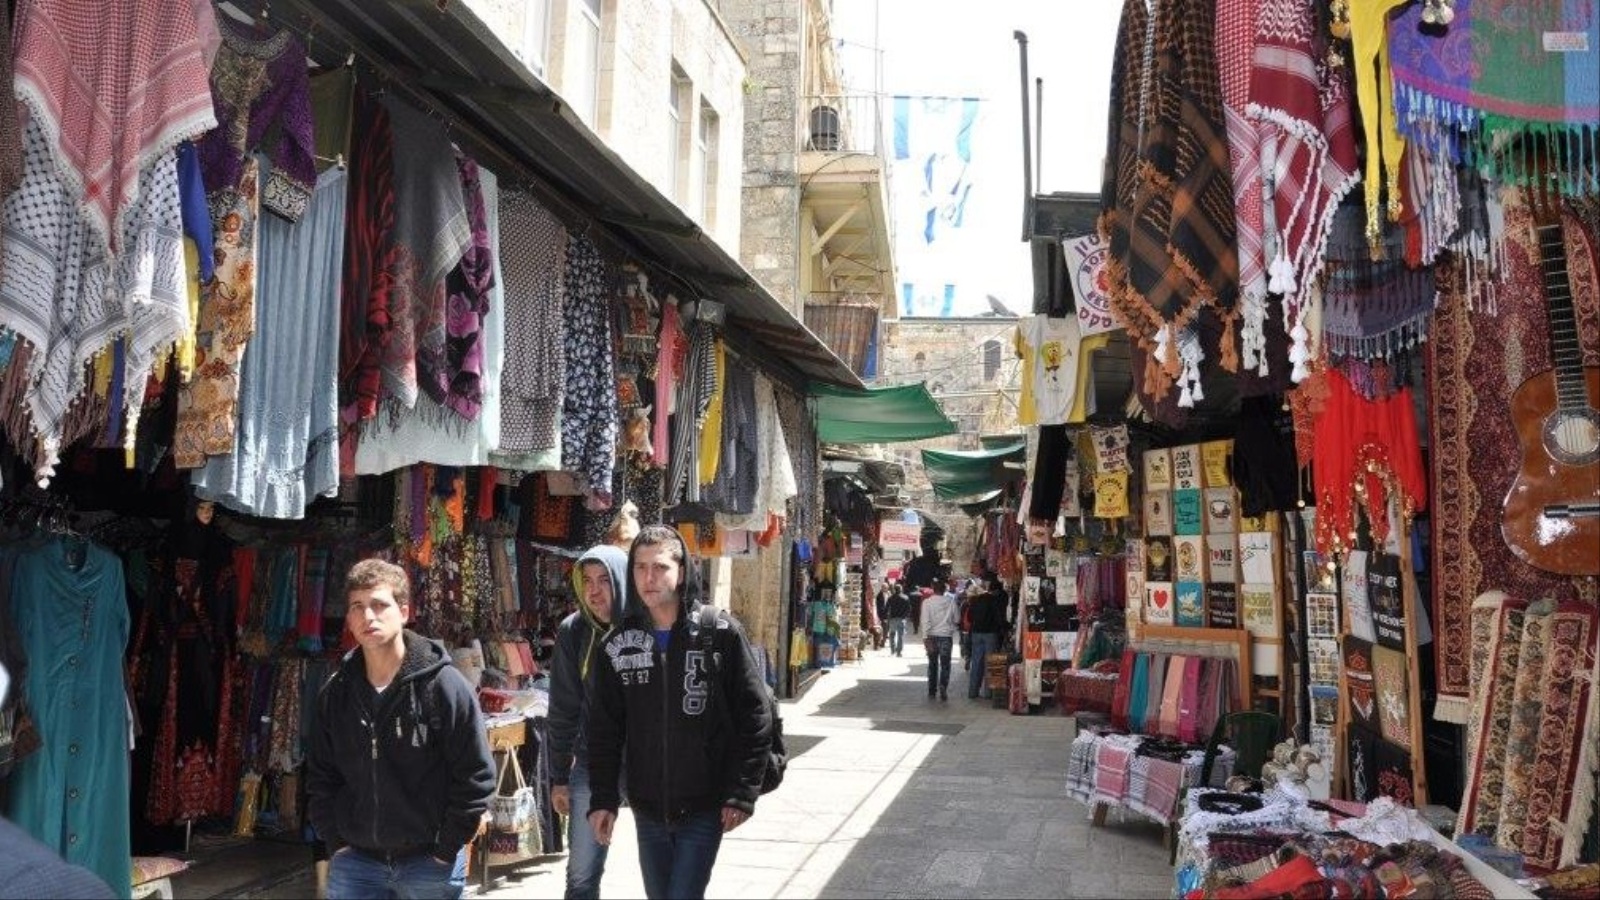 أسواق البلدة القديمة تختزل ملامح كثيرة من حياة وتاريخ أهل مدينة القدس المحتلة(الجزيرة)